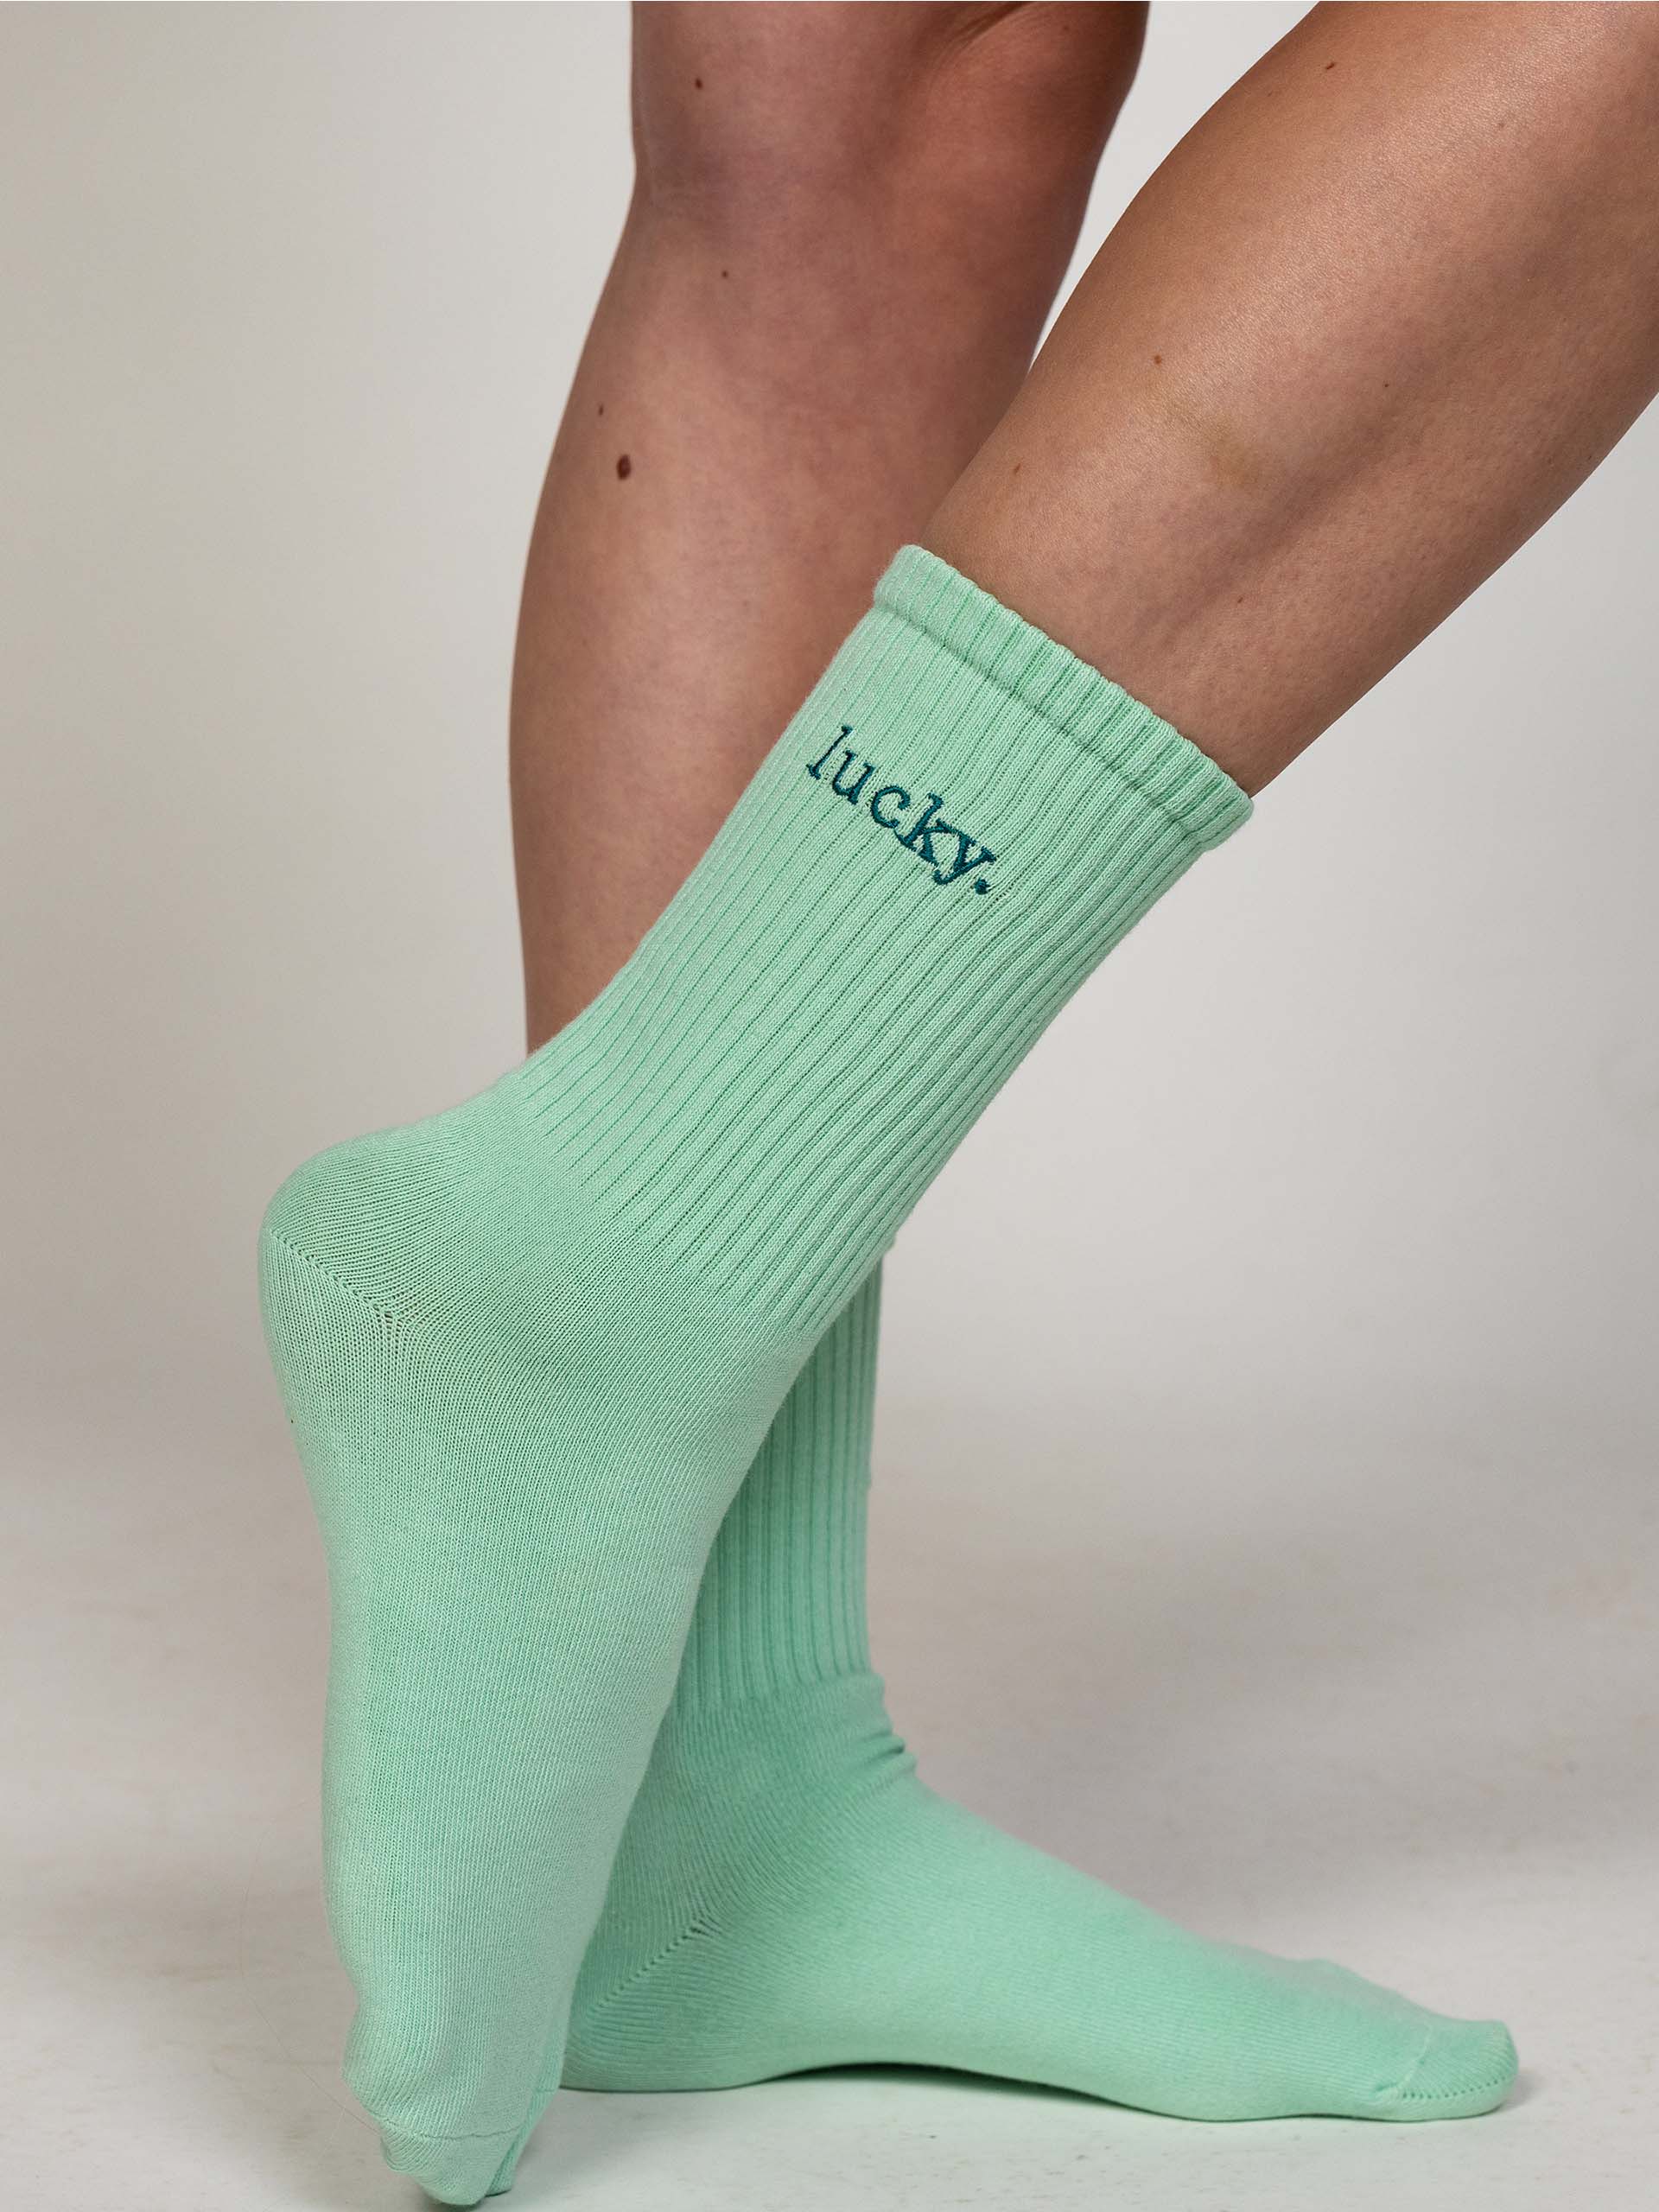 lucky socks